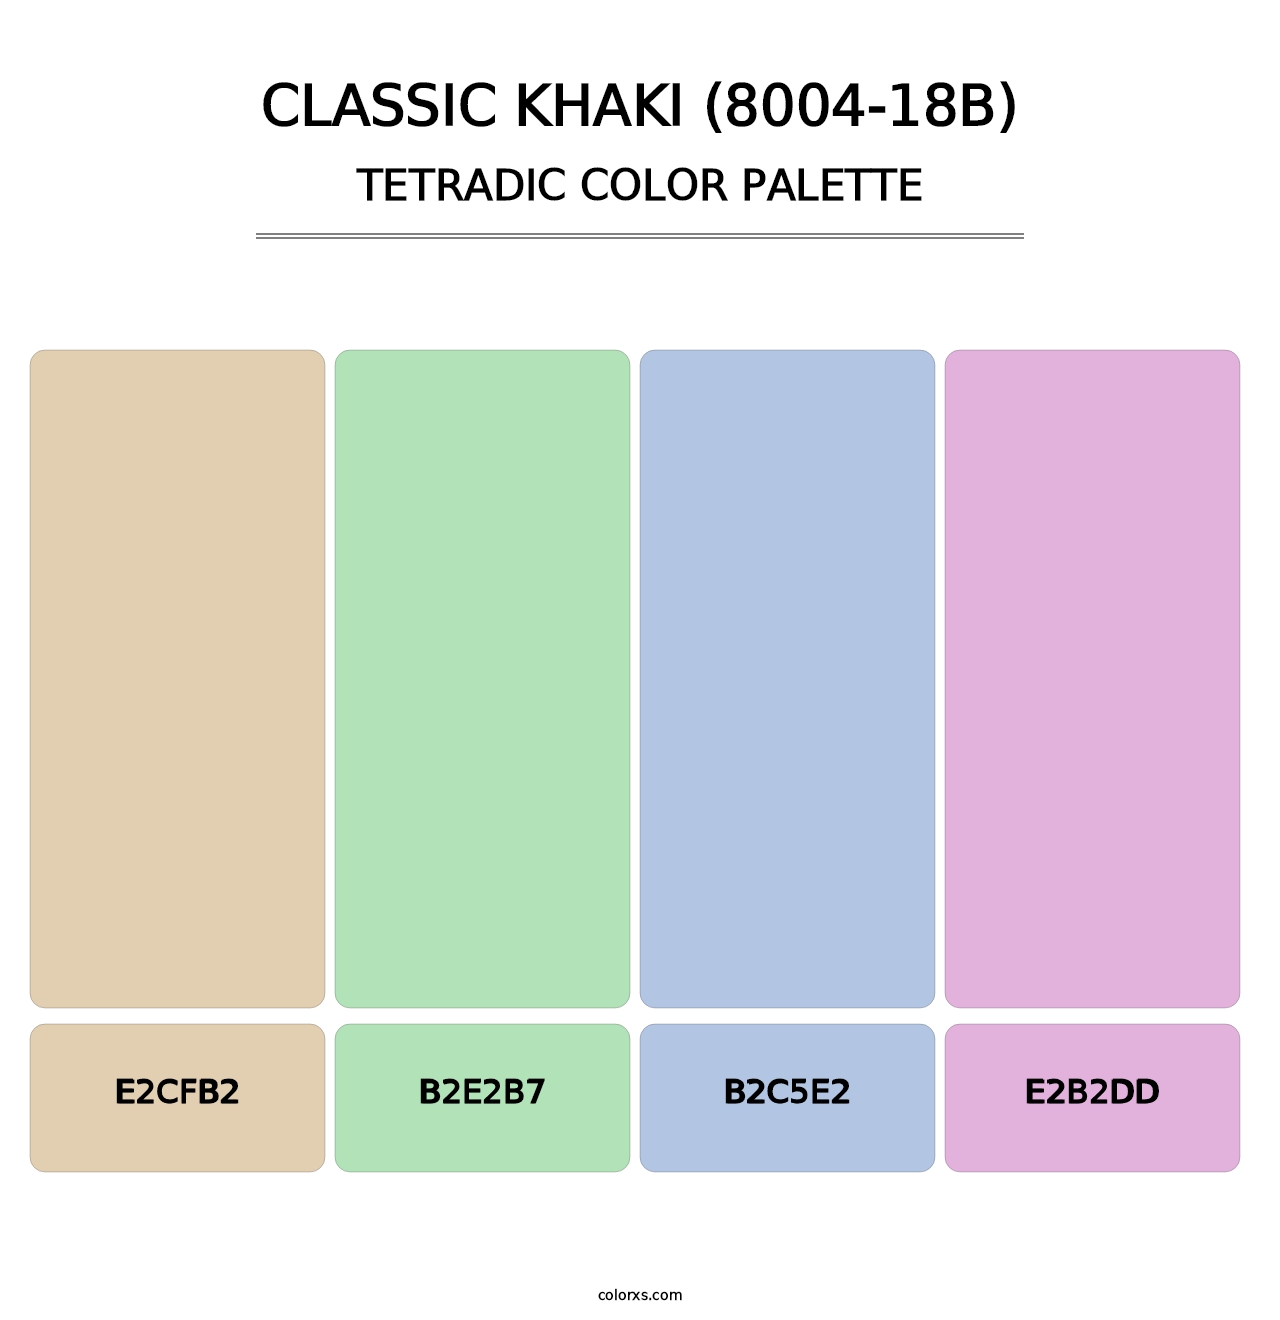 Classic Khaki (8004-18B) - Tetradic Color Palette